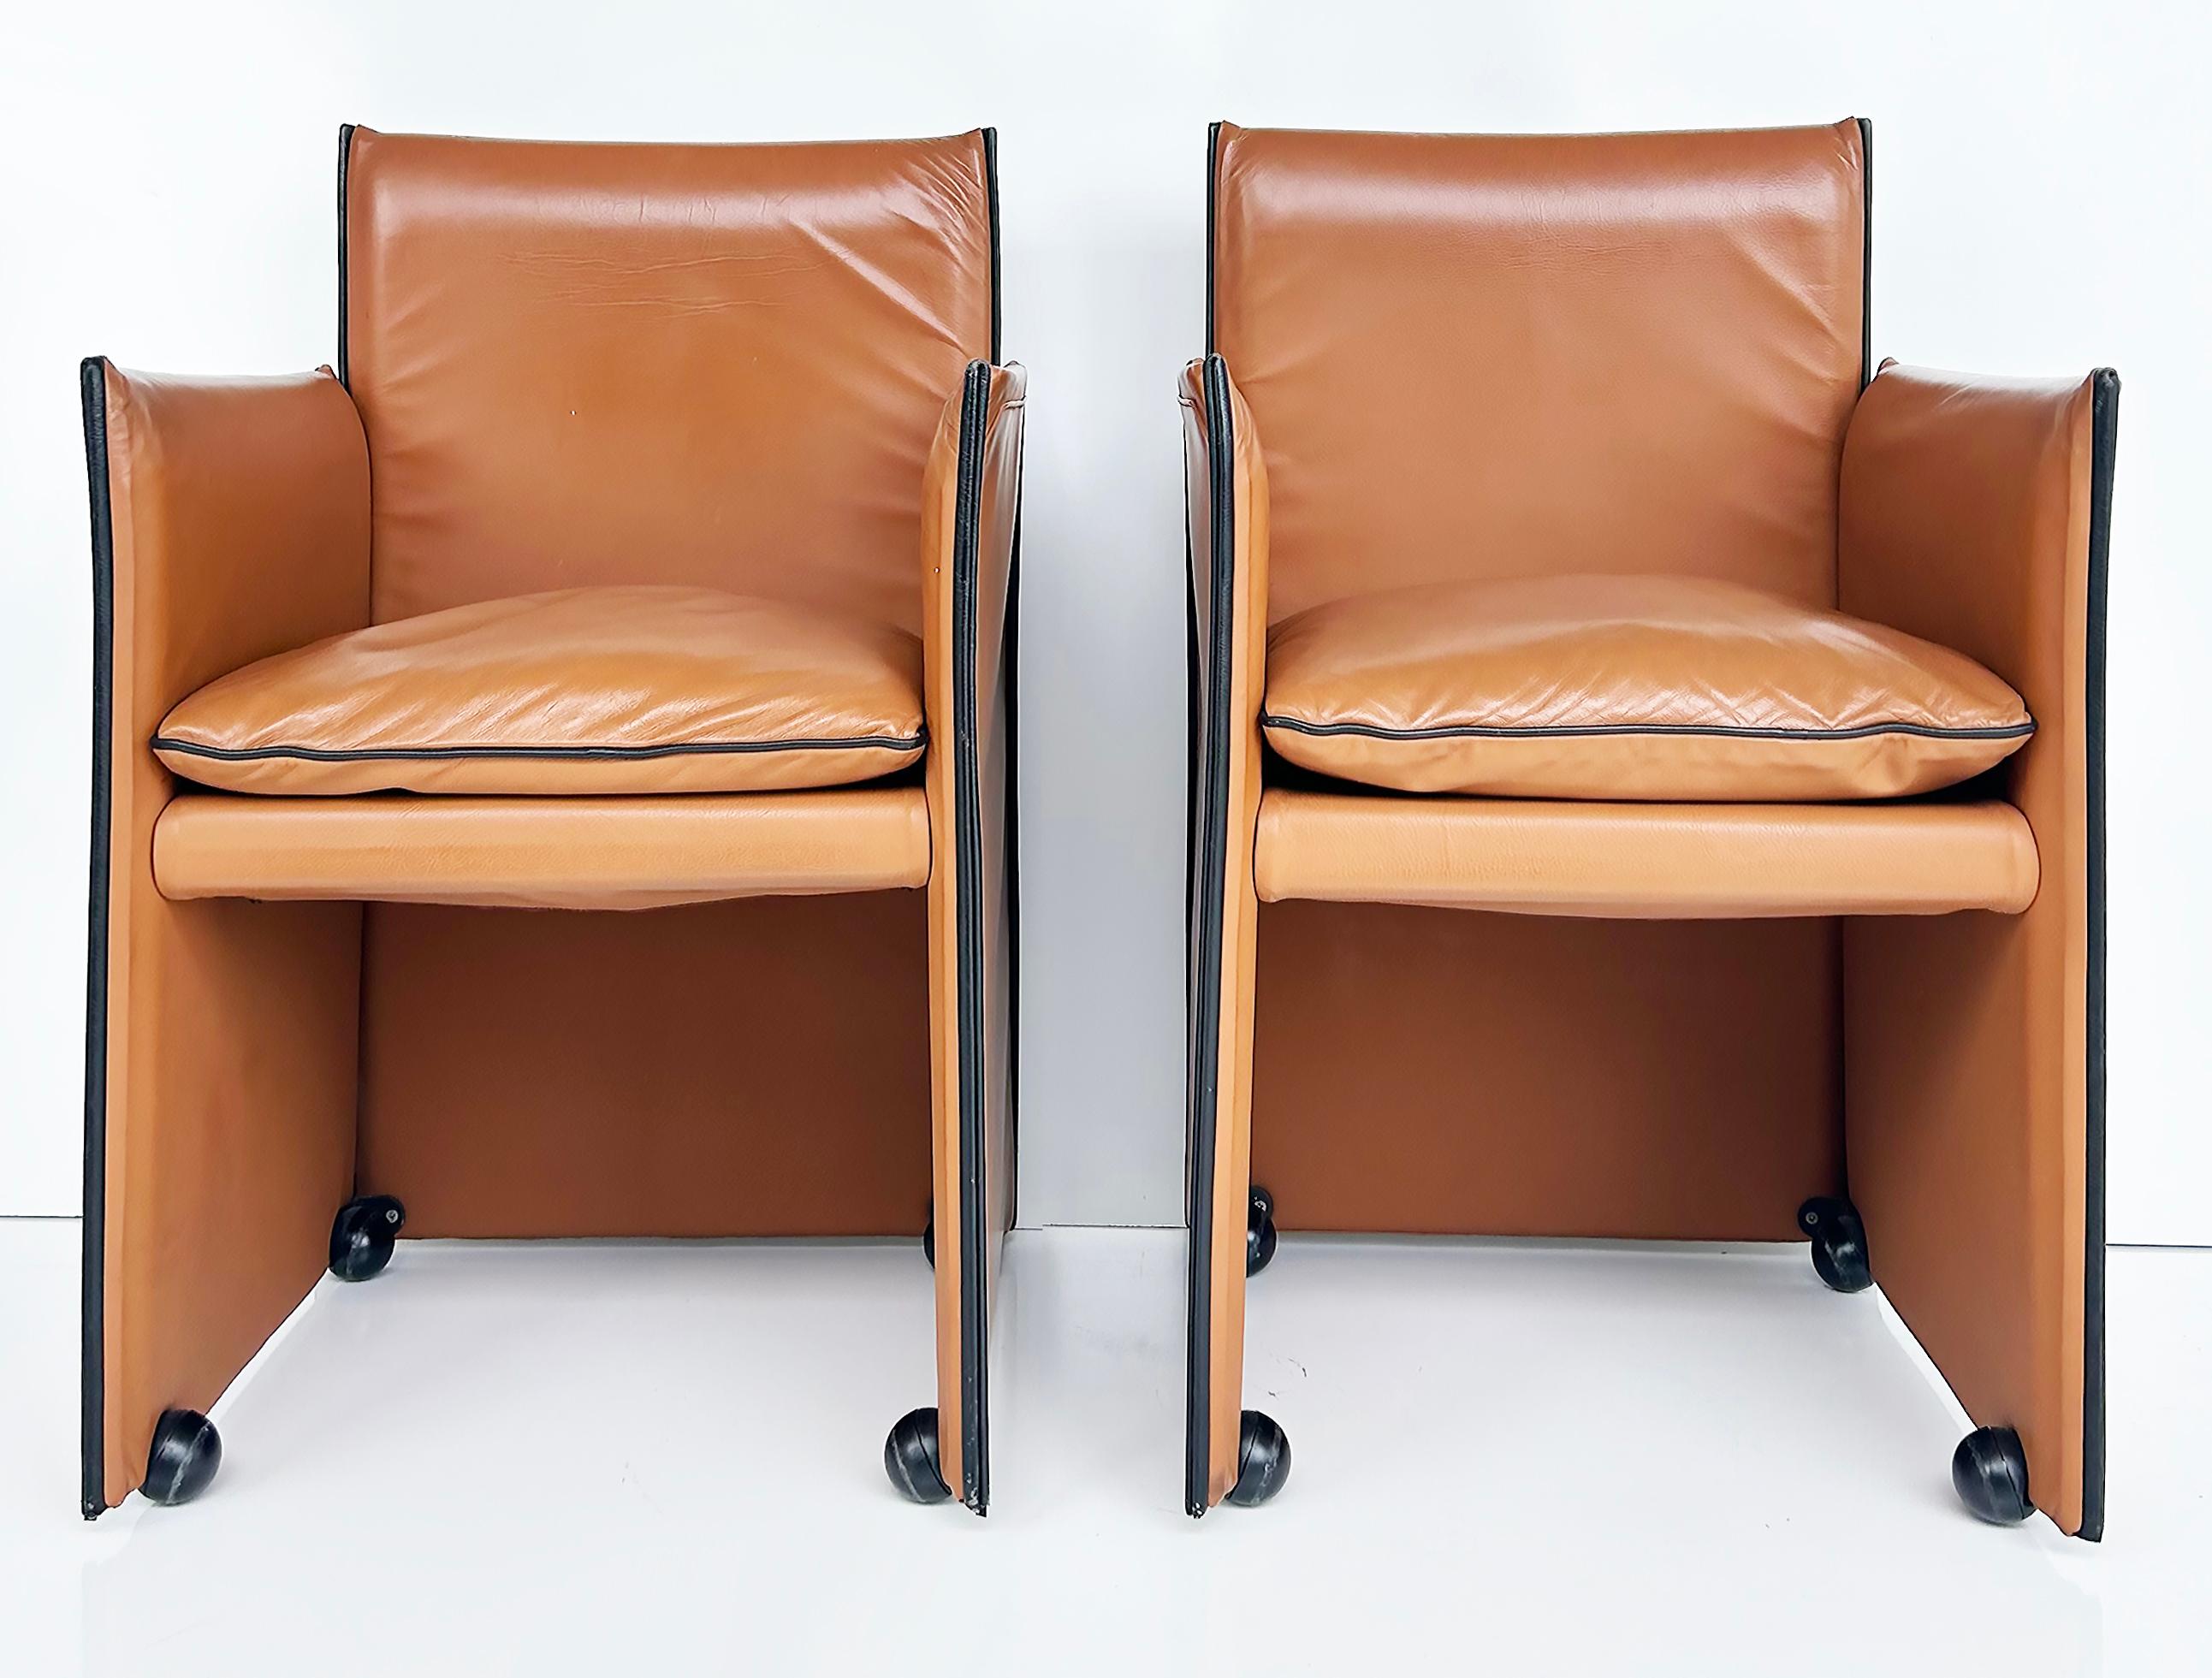 Mario Bellini Cassina Italienische 401 Break-Ledersessel, 1980er Jahre, Paar

Zum Verkauf steht ein Paar ikonischer Stühle, die Mario Bellini in den 1980er Jahren für Cassina entworfen hat.  Die Ledersessel 